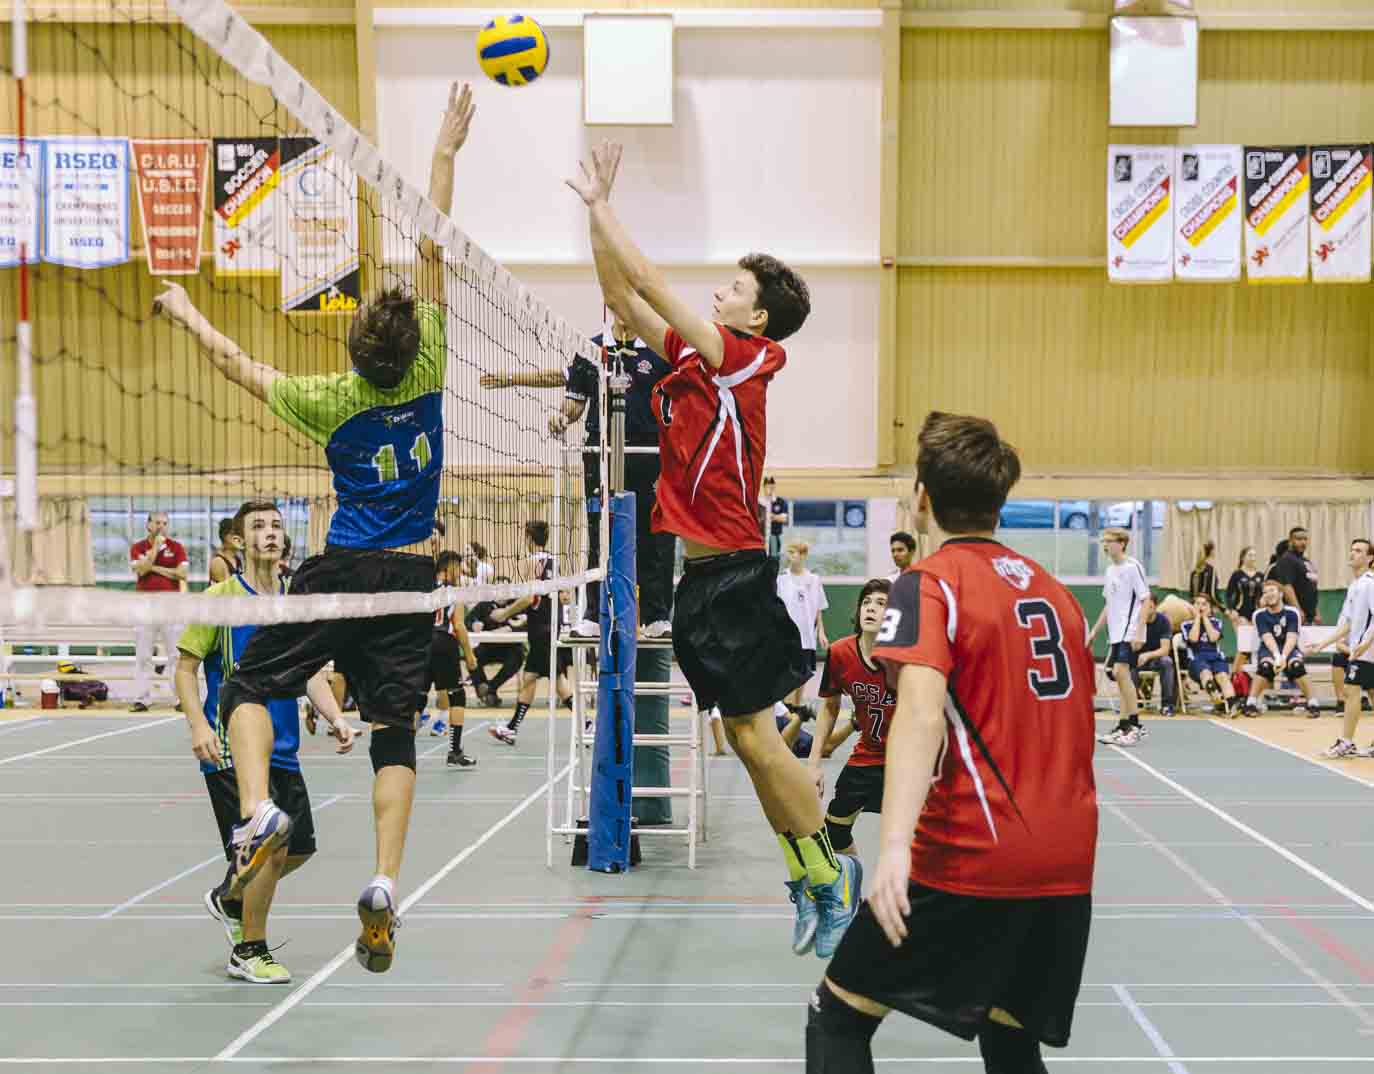 Volleyball Québec Annonce Le Renouvellement De Son Partenariat Avec L’Université De Sherbrooke/Club Envolley